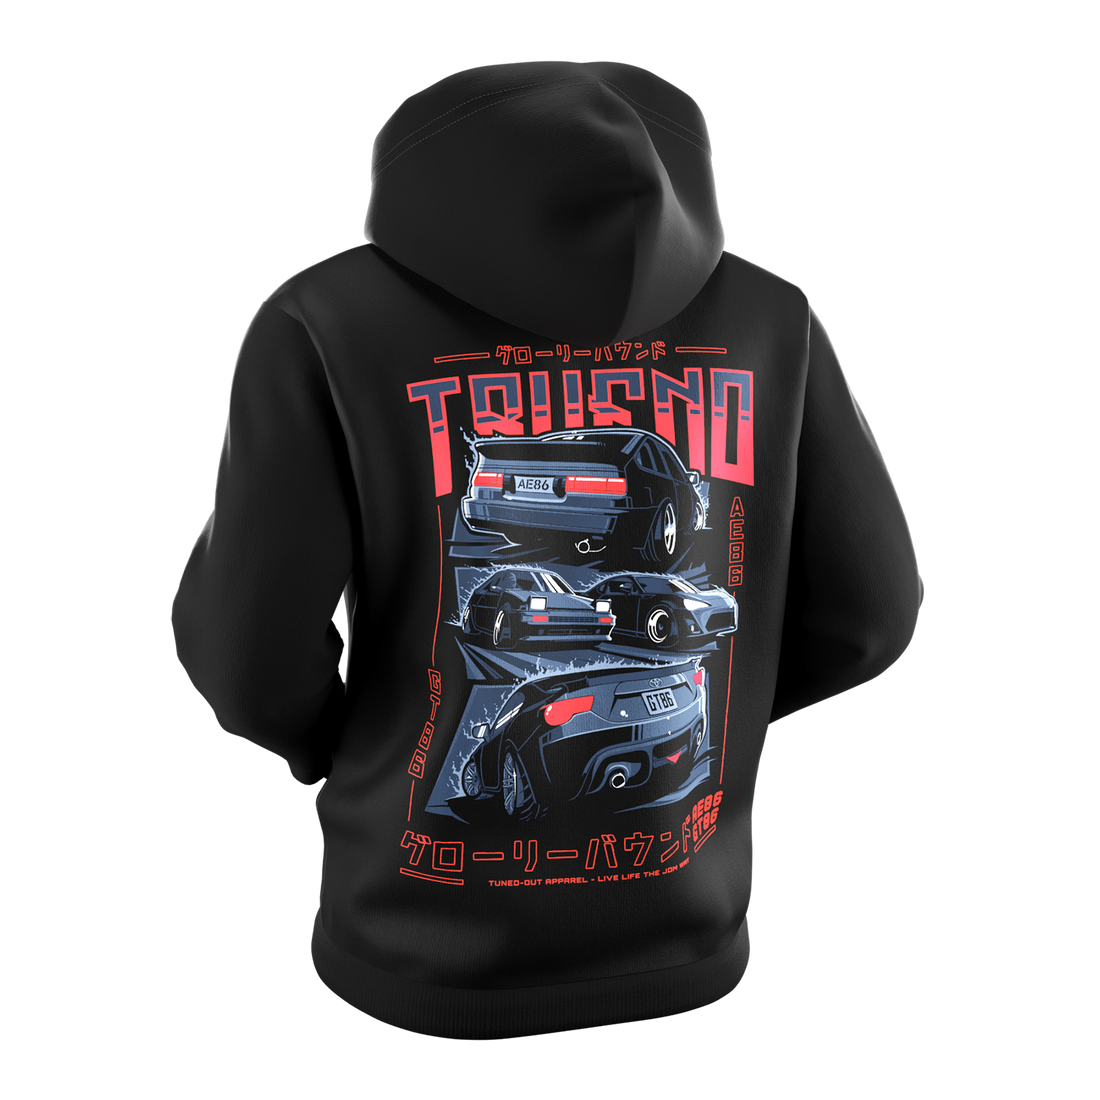 Trueno & GT86 hoodie black